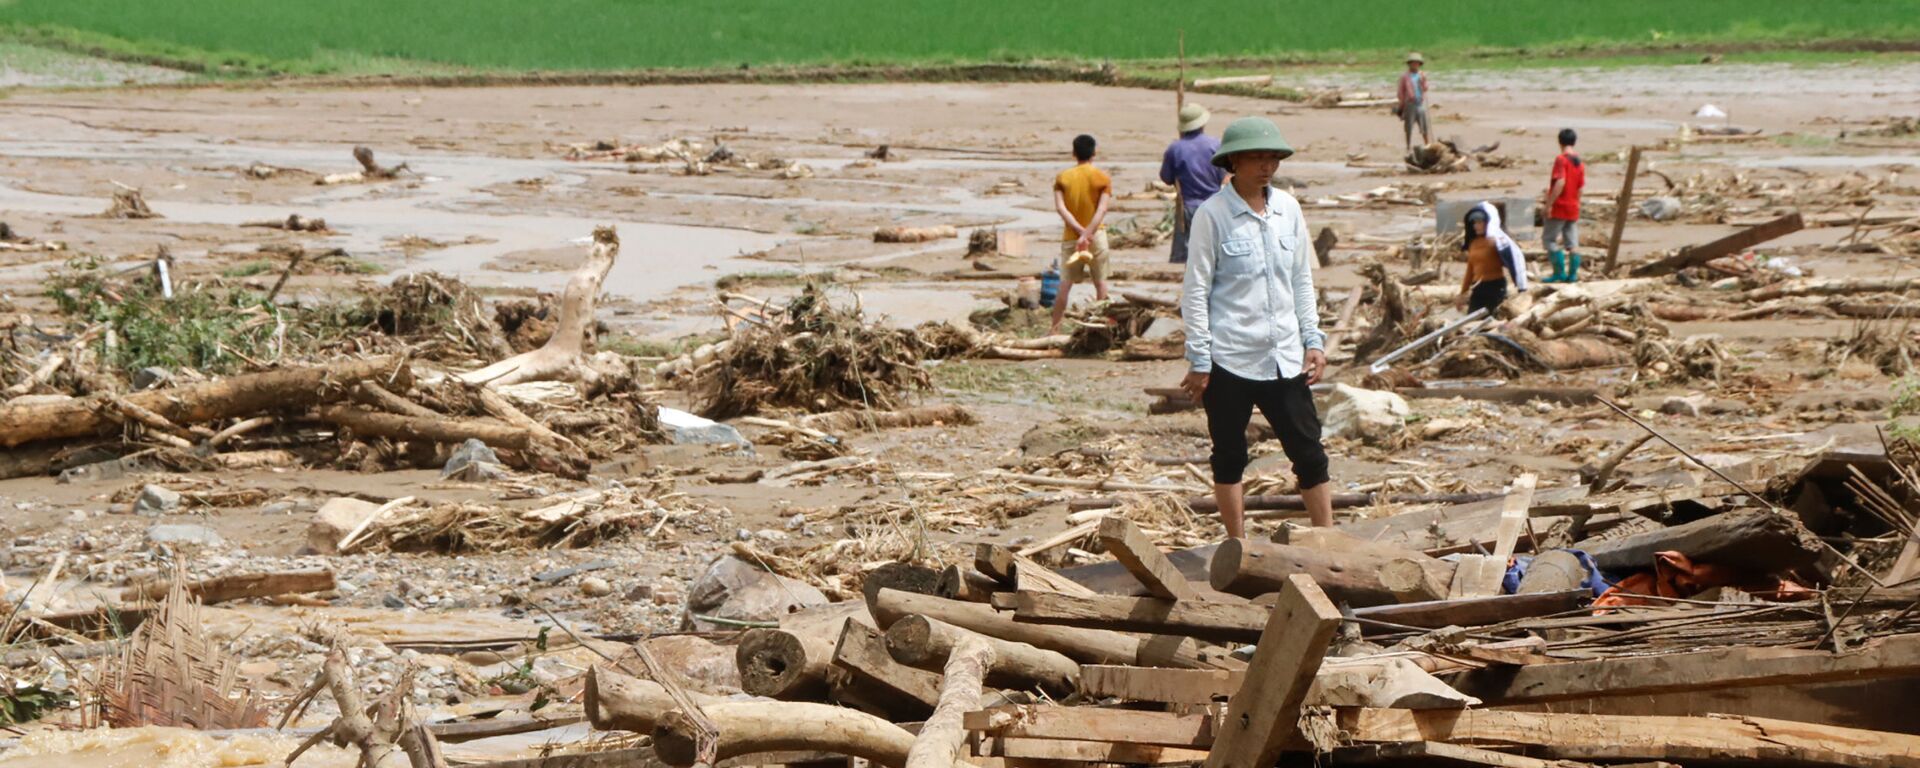 Lũ lụt tại tỉnh Yên Bái, Việt Nam - Sputnik Việt Nam, 1920, 24.04.2021